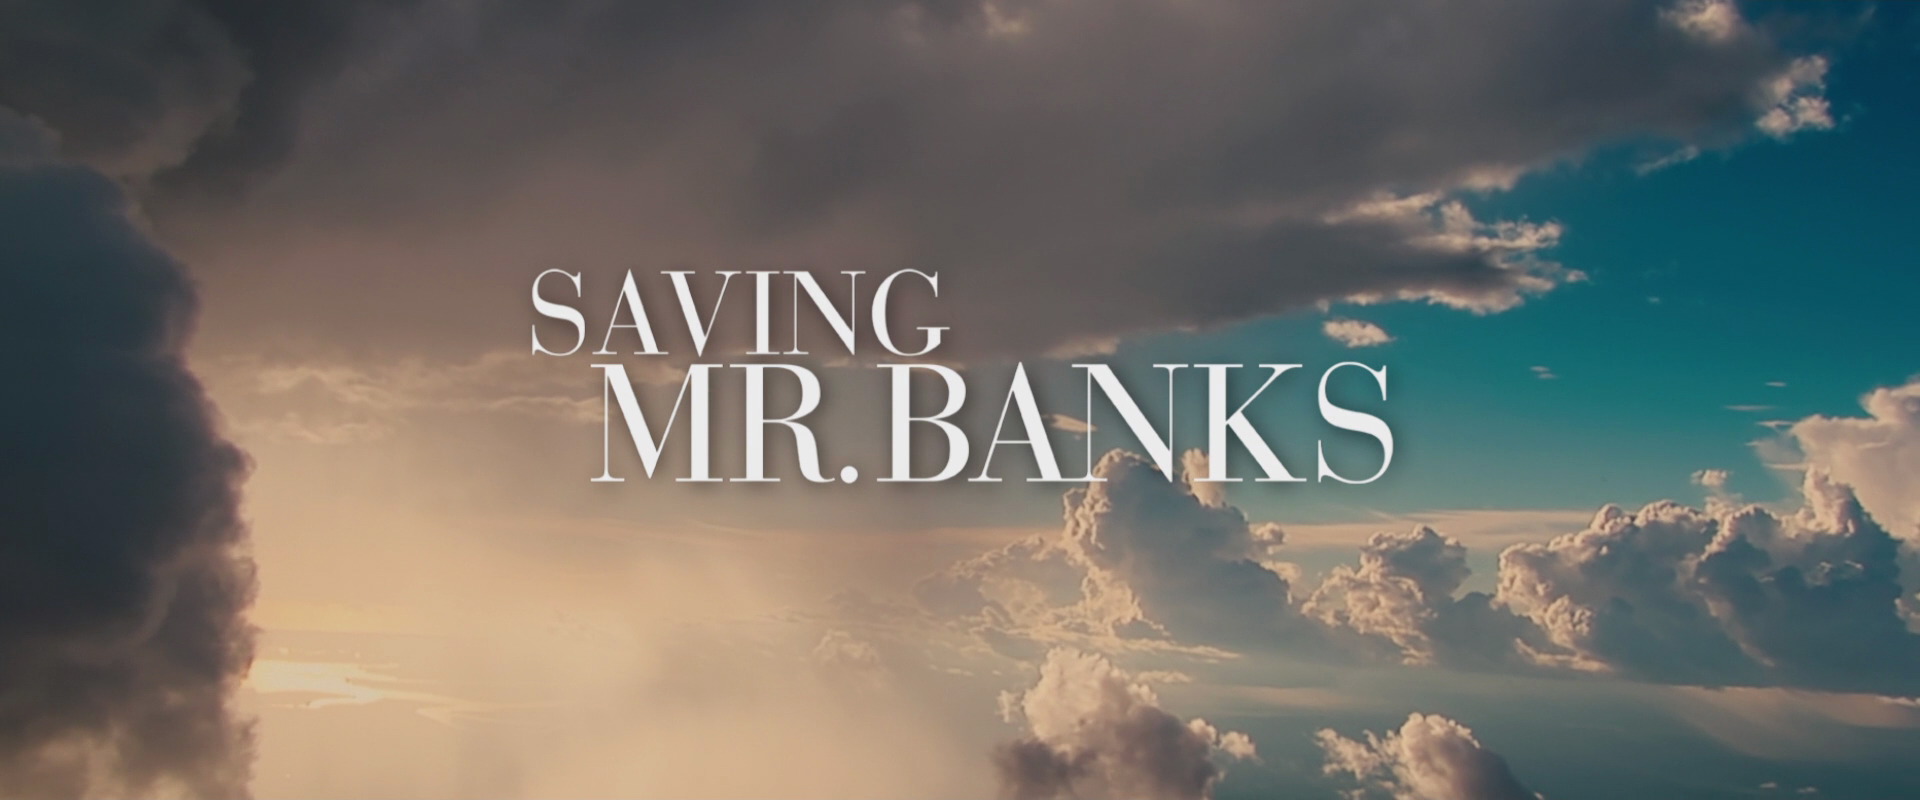 1920x800 > Saving Mr. Banks Wallpapers